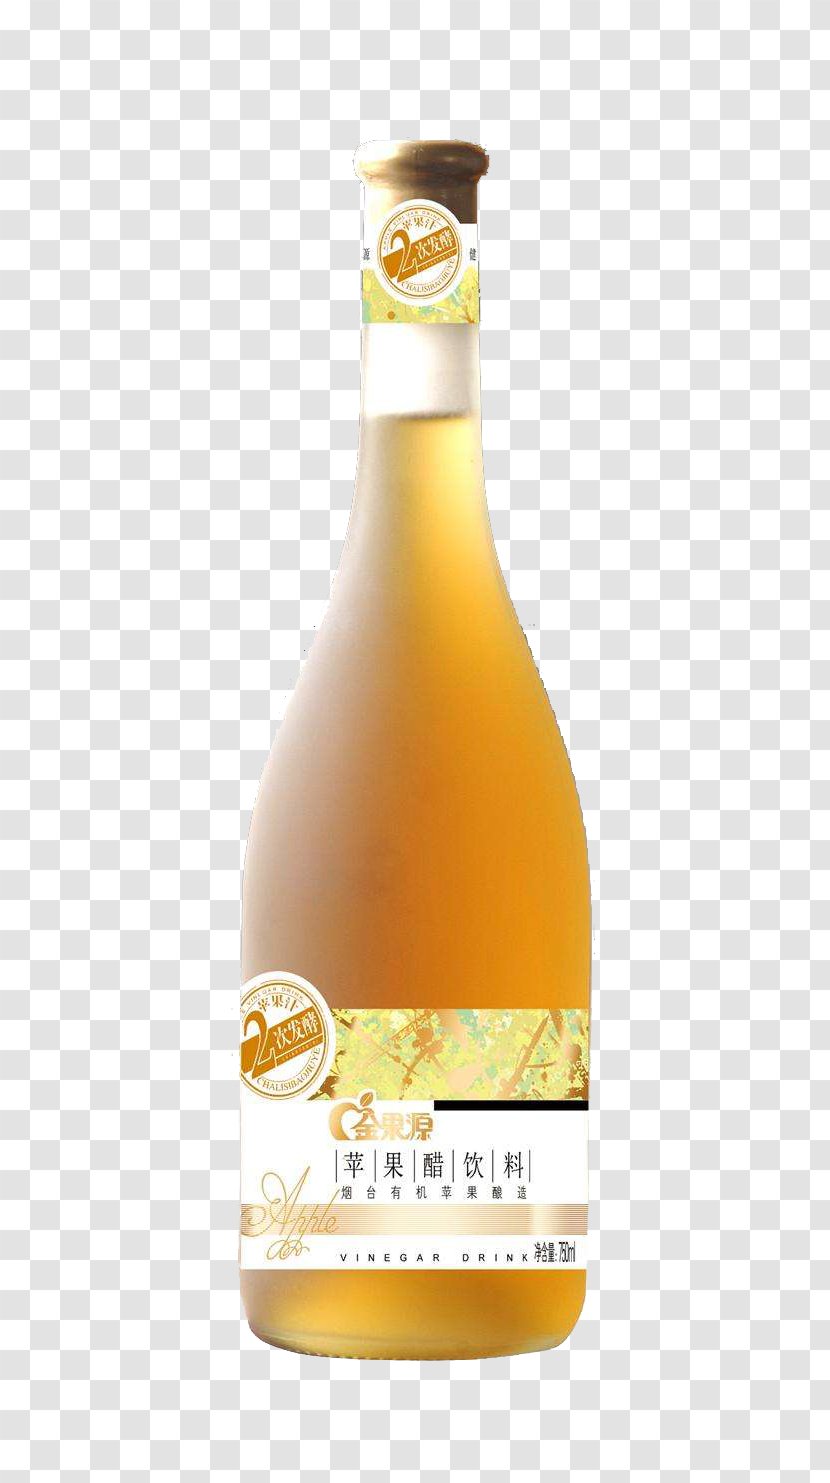 Apple Cider Material - Bottle - Vinegar Design Transparent PNG